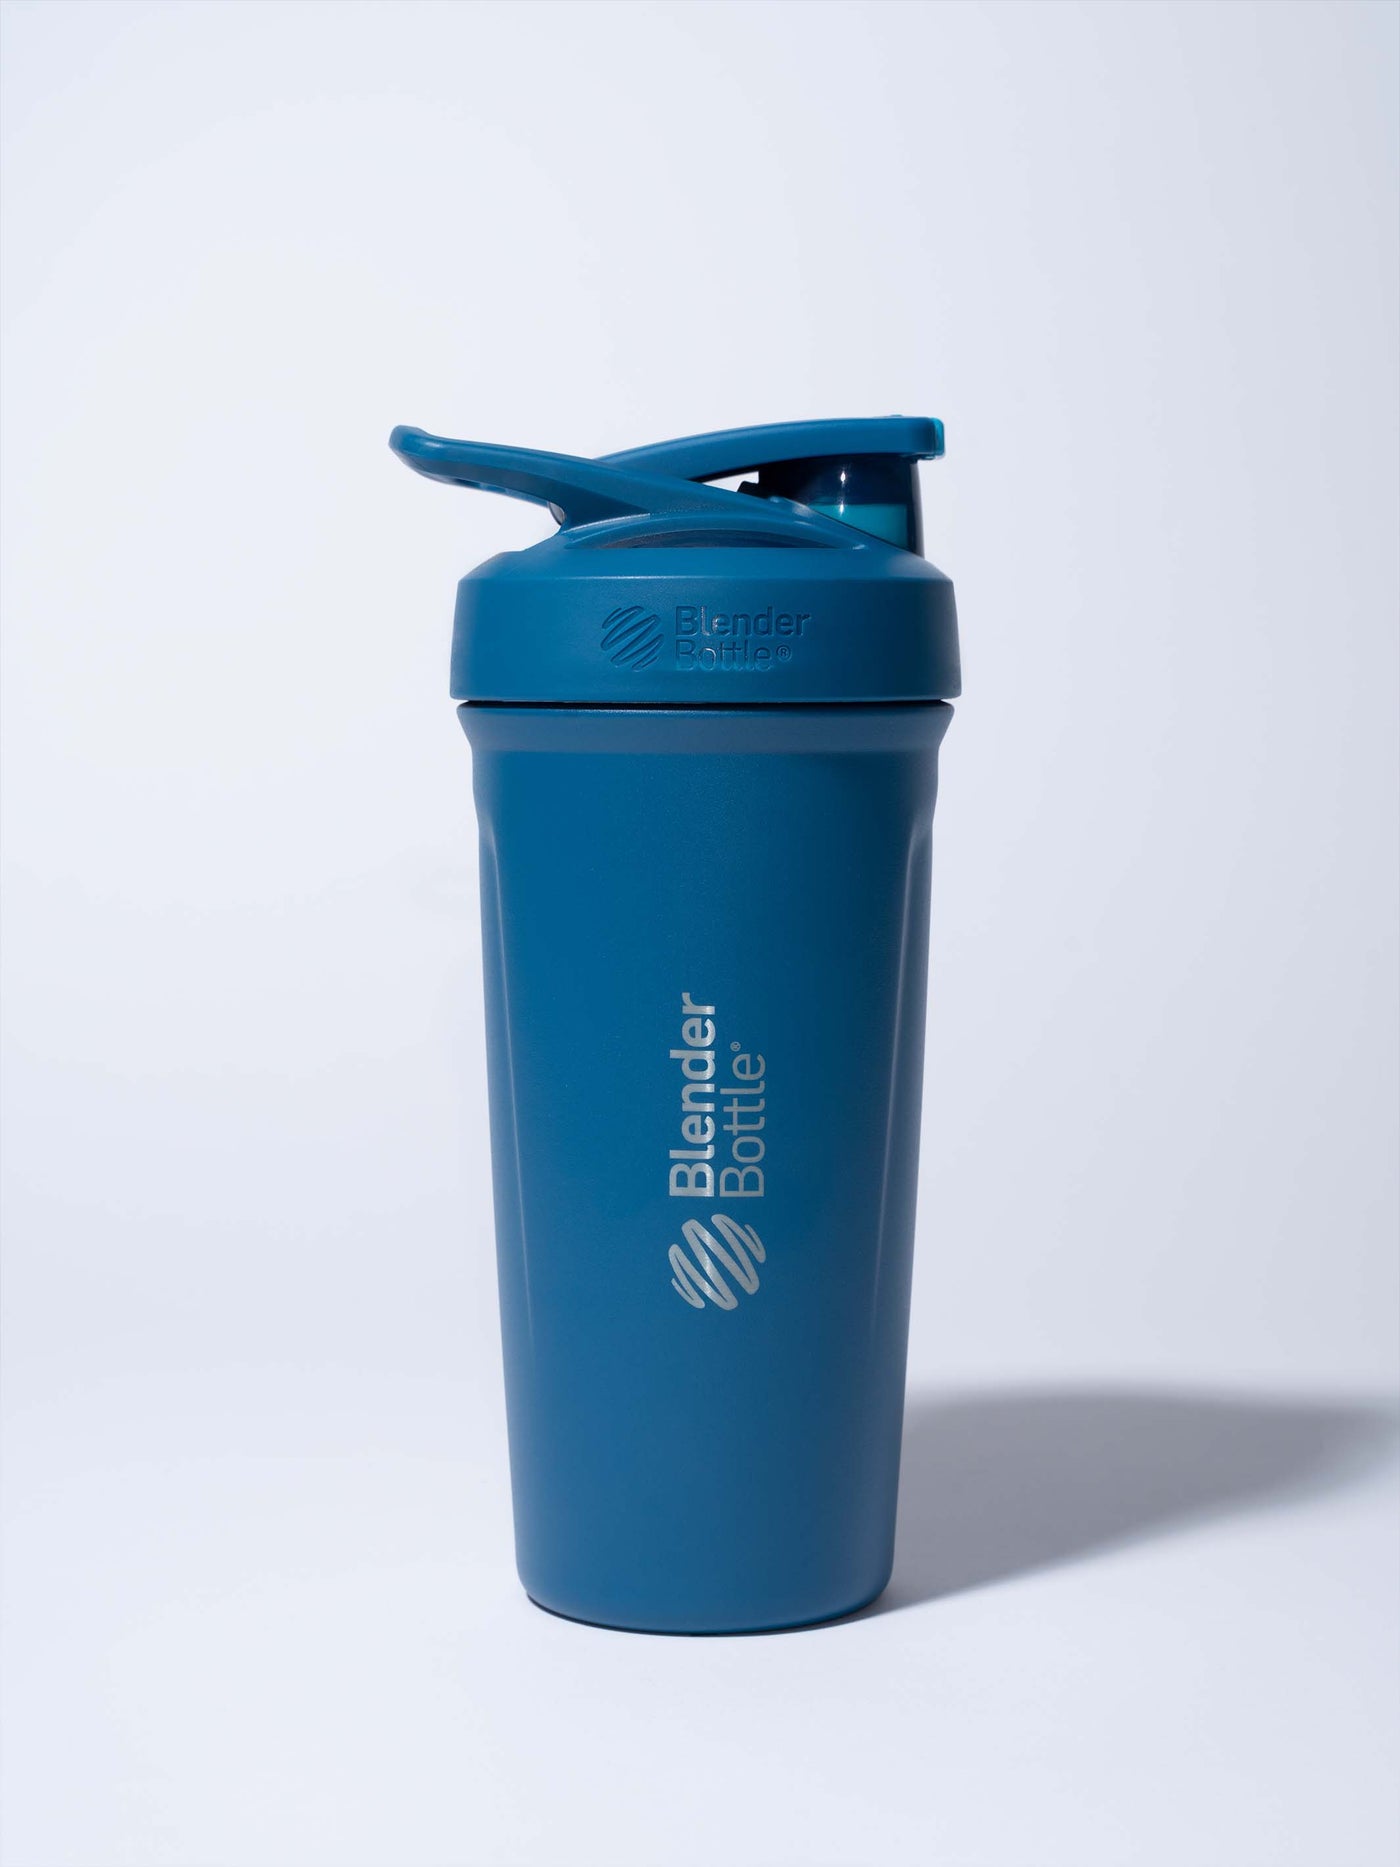 BlenderBottle Classic V2 Shaker Cup - Blue - 24 oz